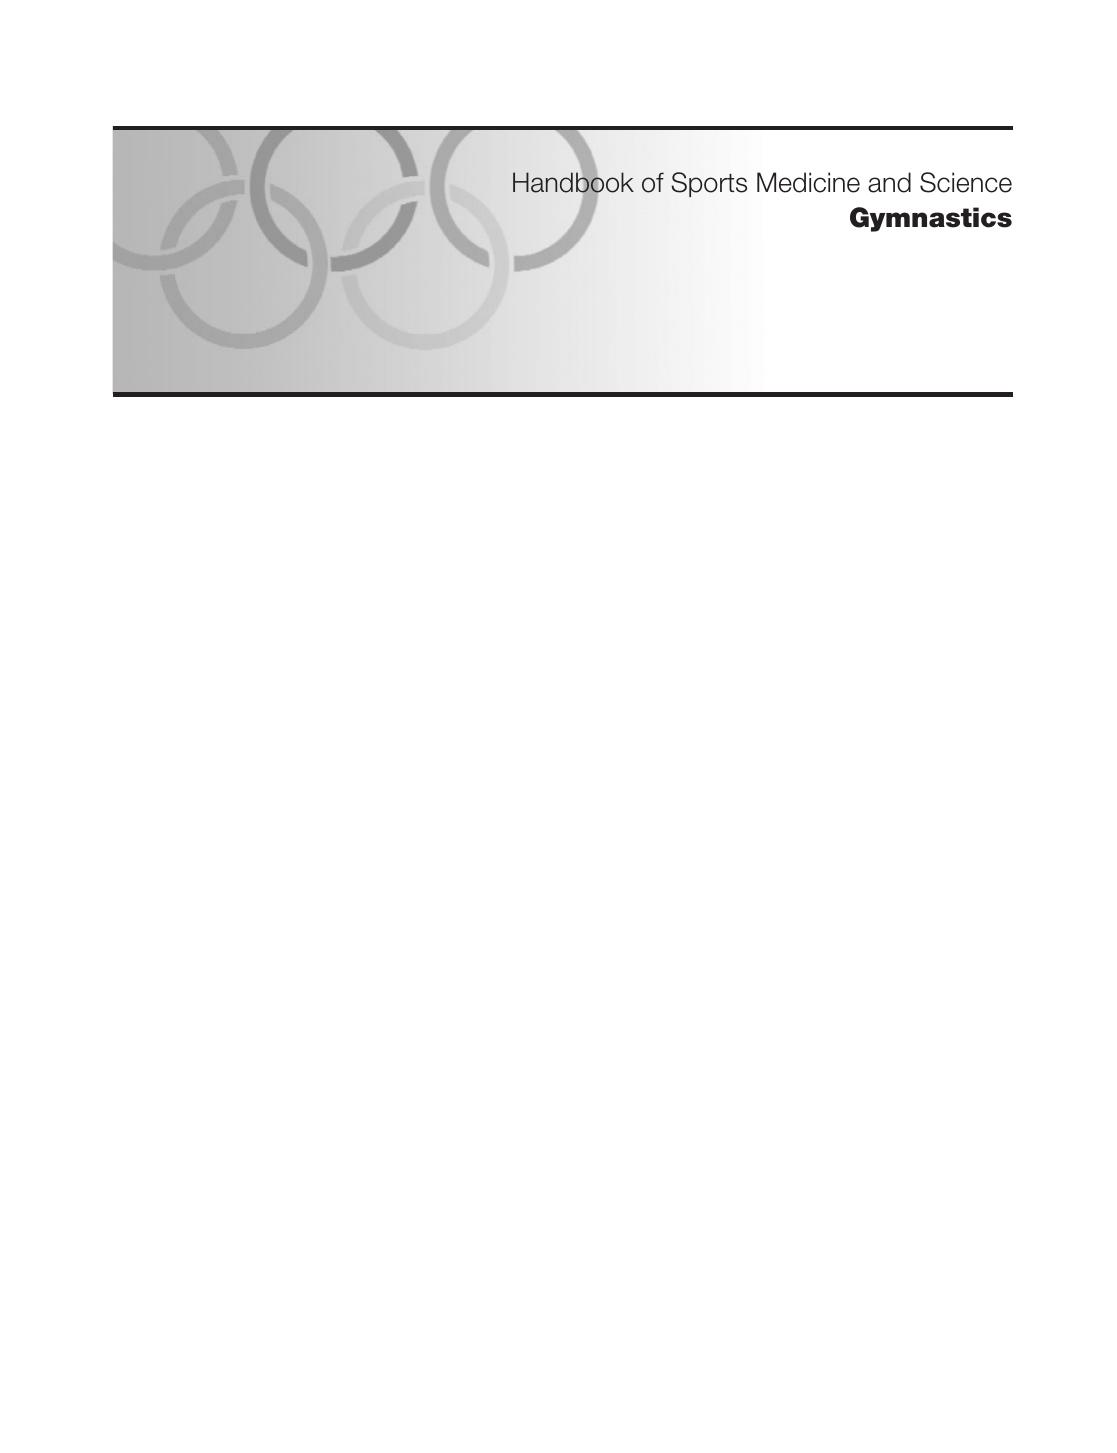 Handbook of Sports Medicine and Science- Gymnastics 2013